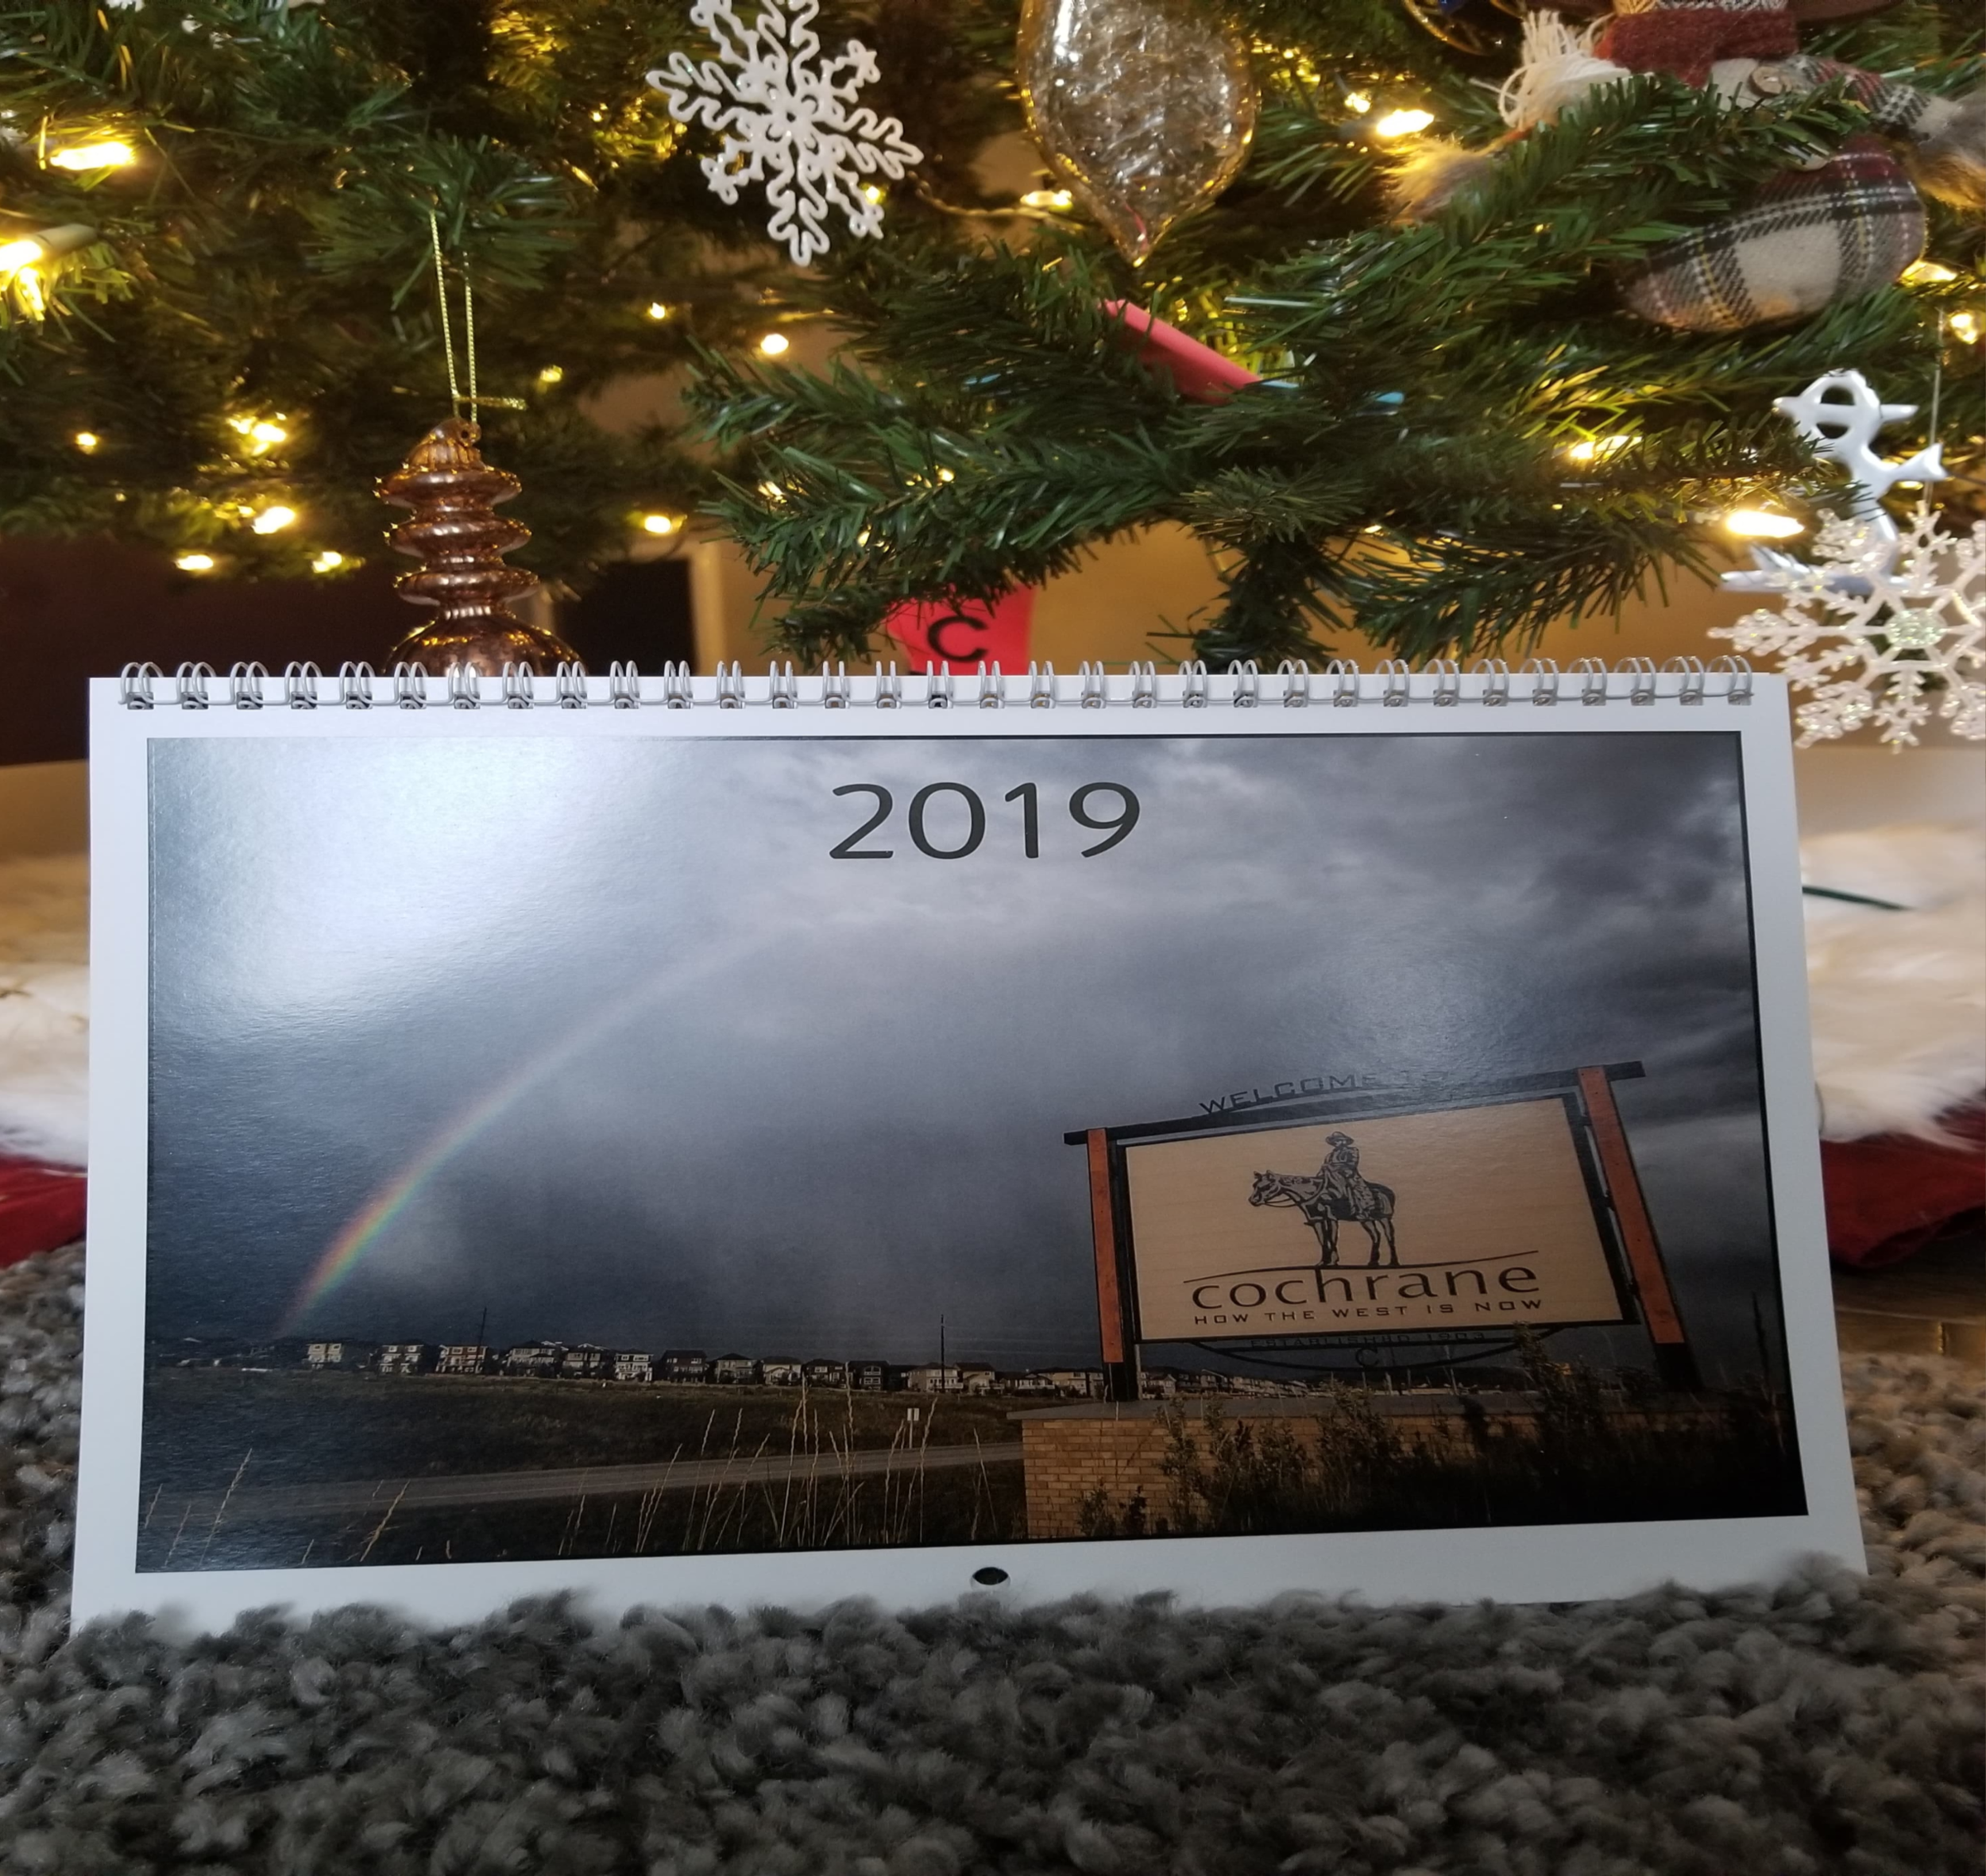 2019 Cochrane Calendar by Tim Hall